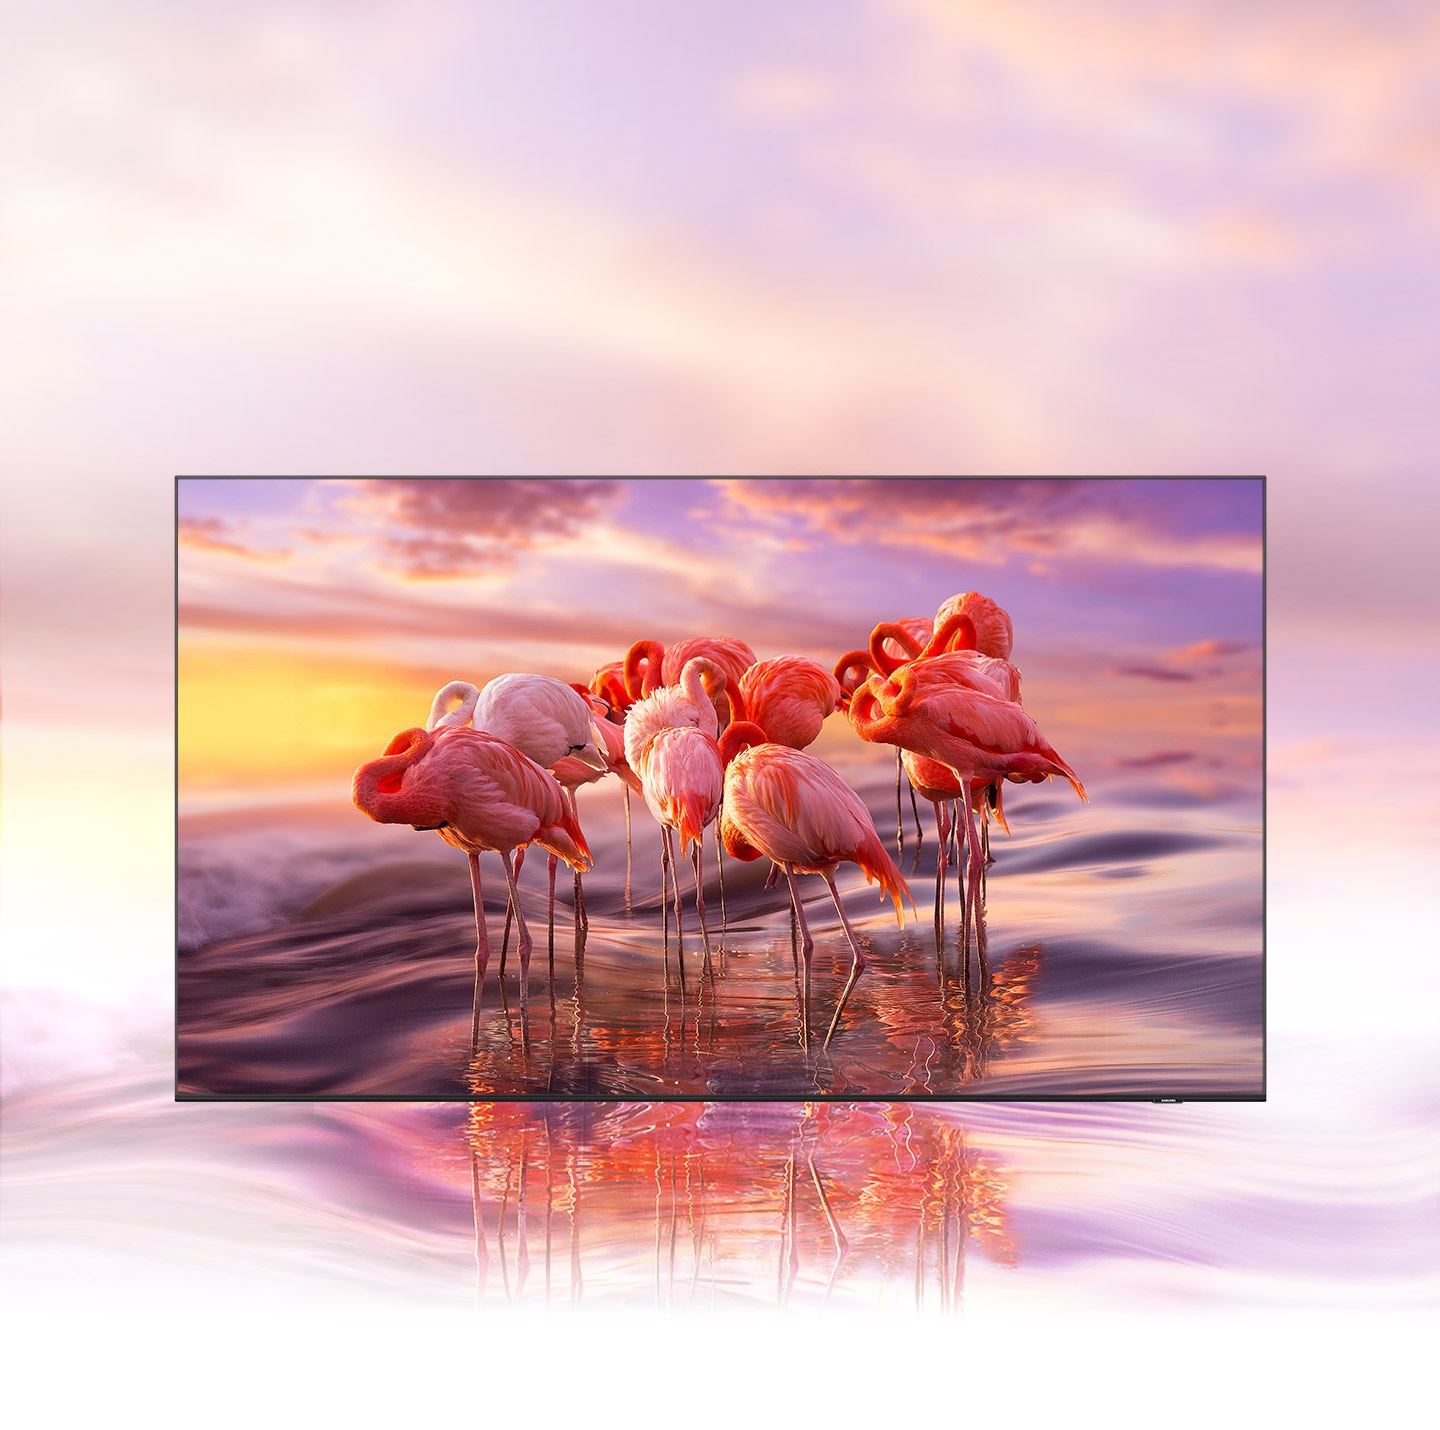 QLED TV hiển thị hình ảnh hồng hạc có màu sắc phức tạp để minh họa màu sắc rực rỡ từ công nghệ Chấm Lượng Tử.